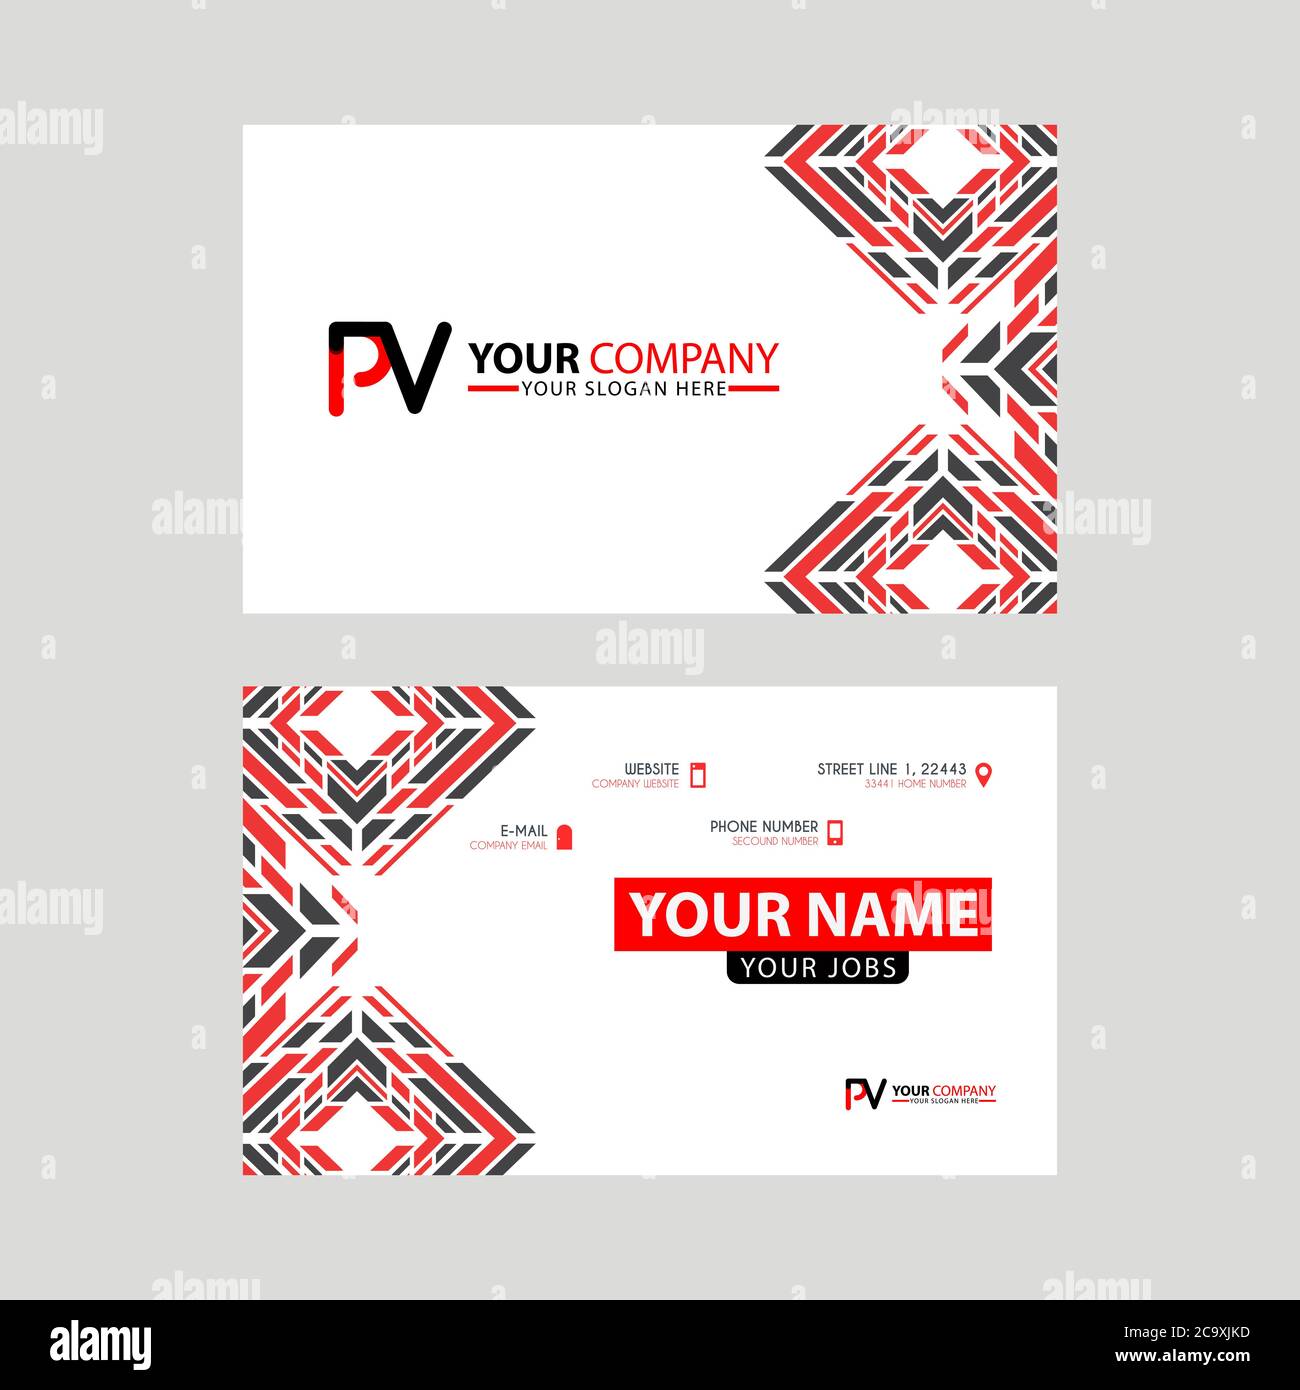 Modèles de cartes de visite modernes, avec logo PV lettre et design horizontal et couleurs rouge et noir. Modèle de logo VP Illustration de Vecteur